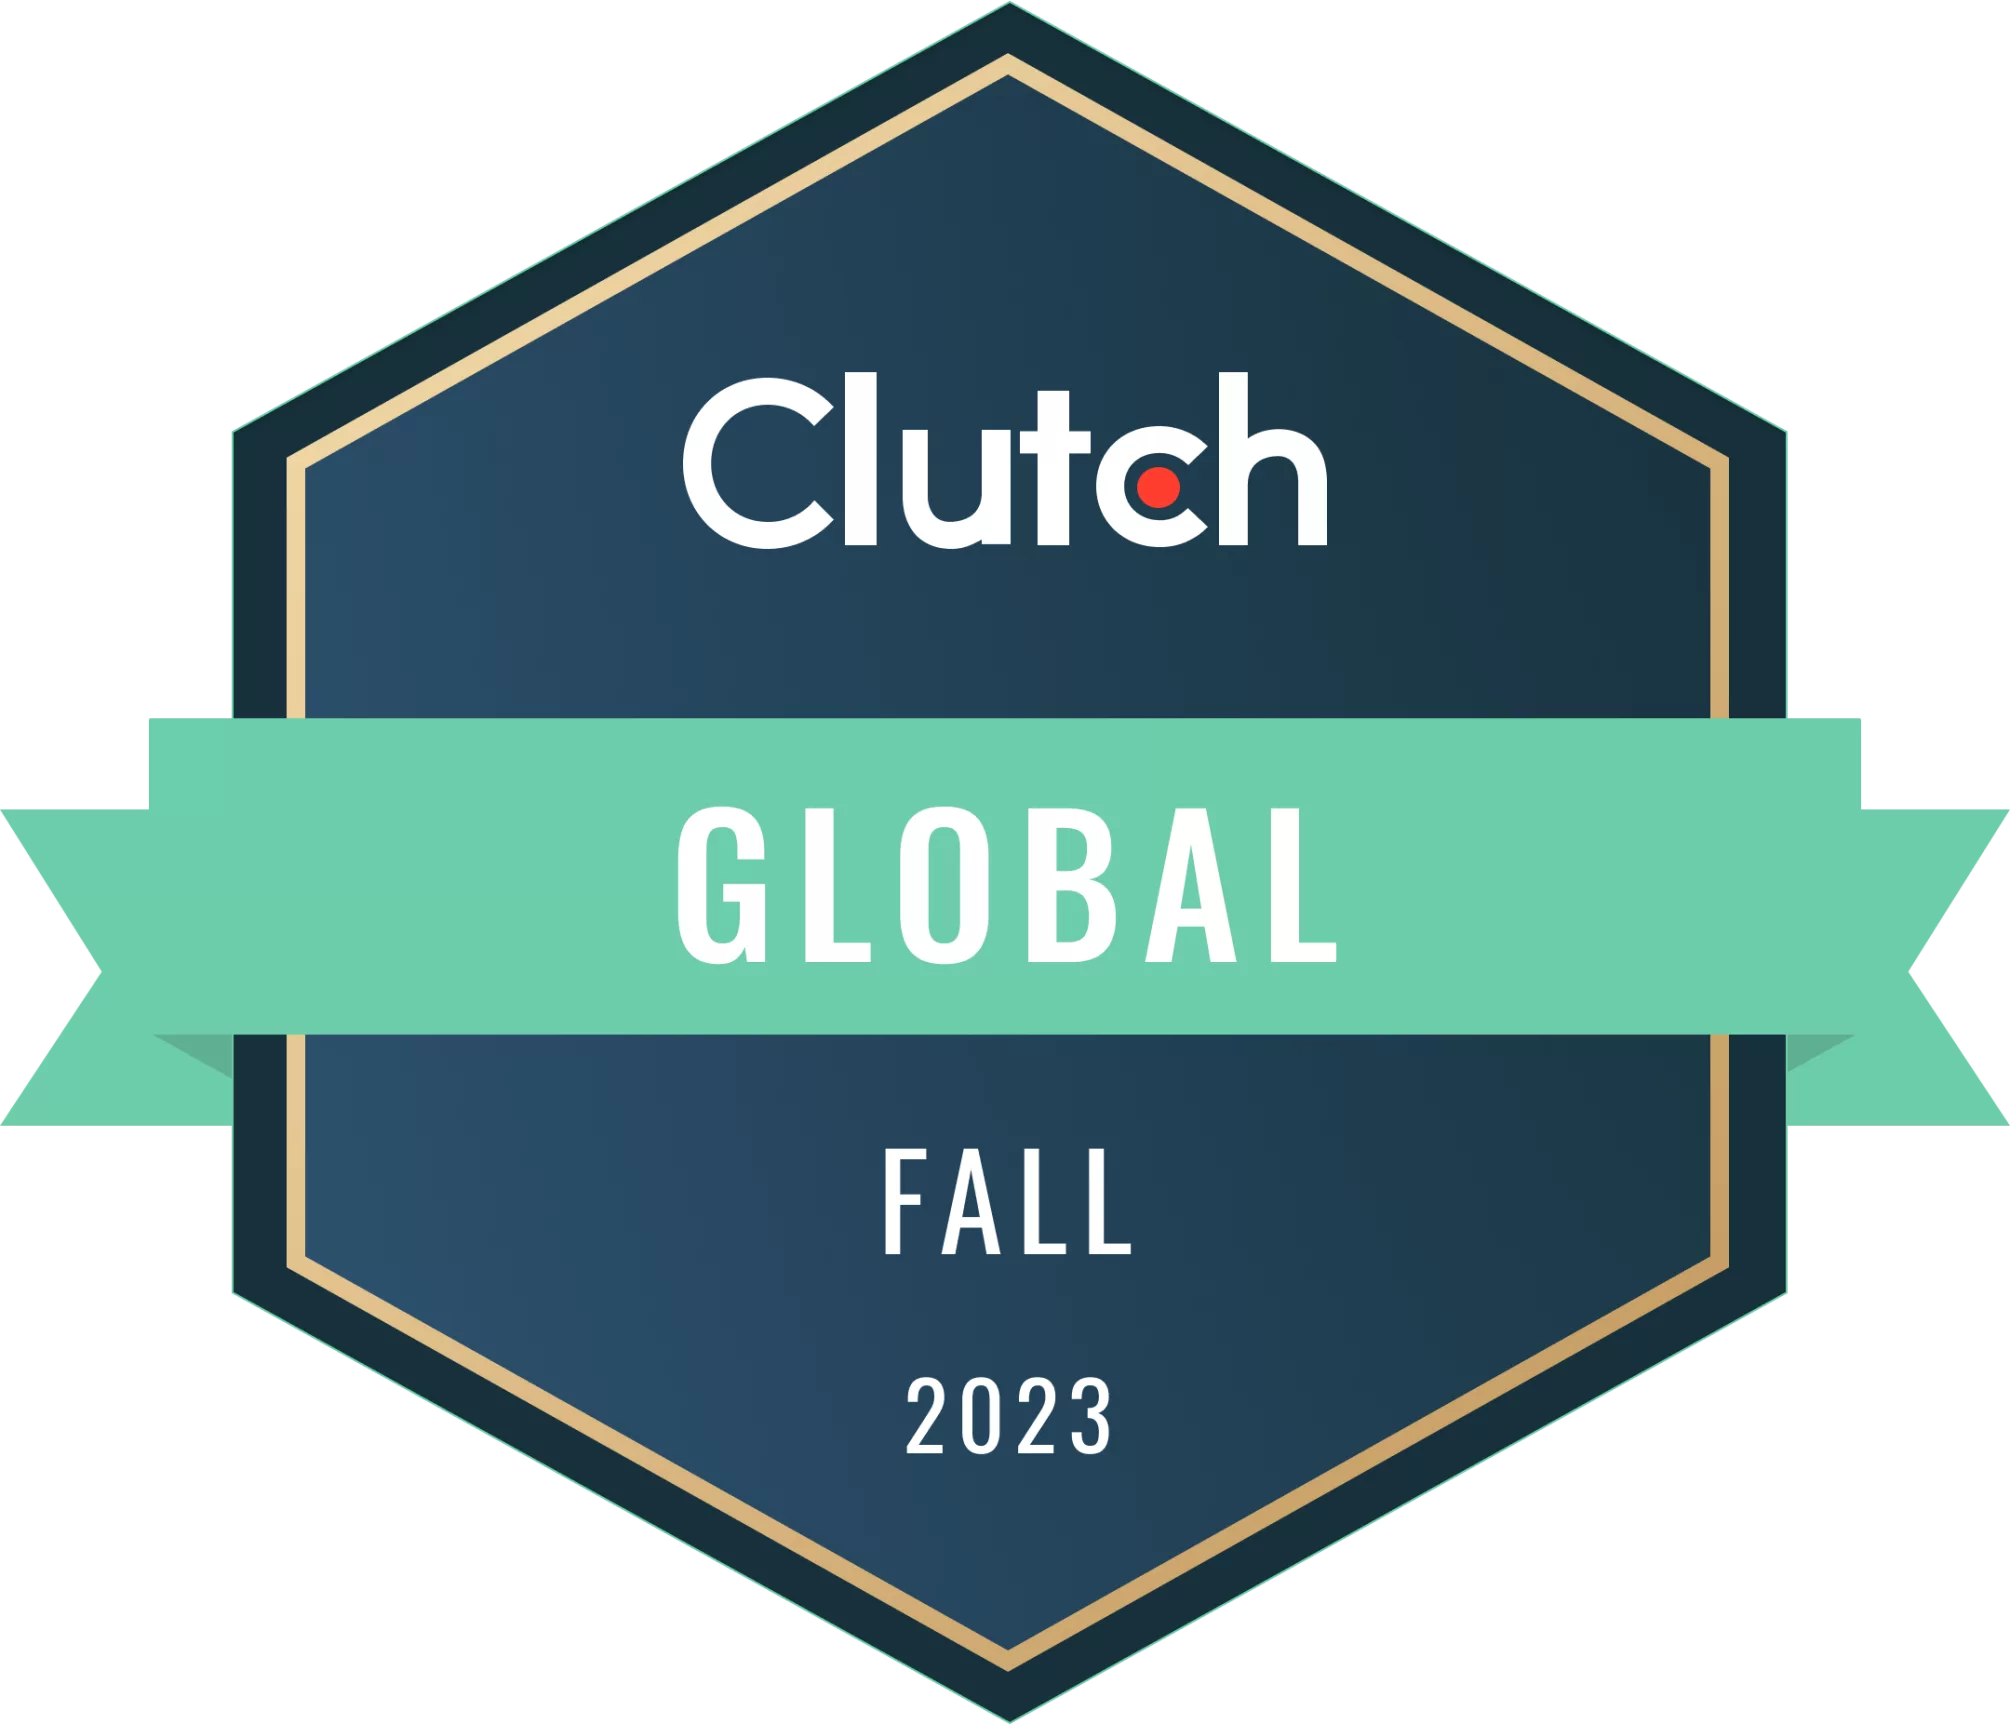 Clutch badge for Global Fall 2023 award